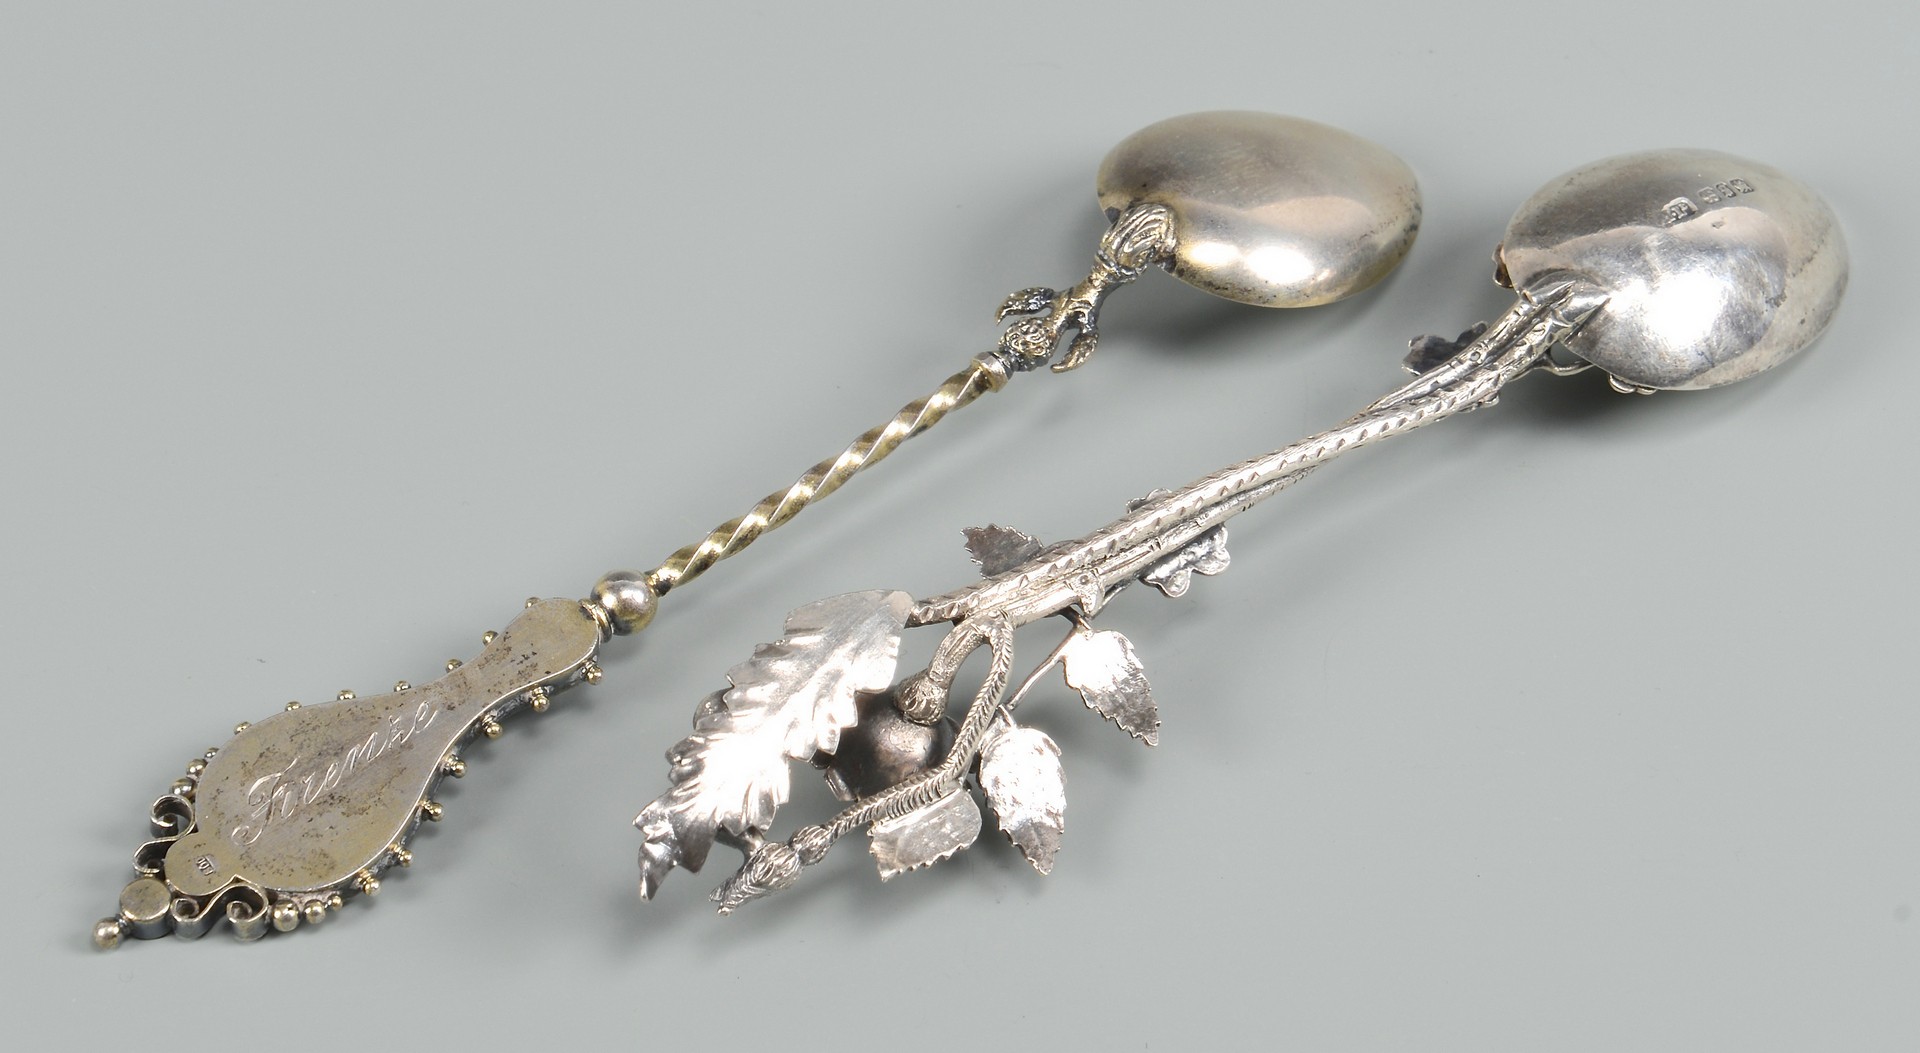 Lot 819: 29 Souvenir Spoons plus pick, most sterling